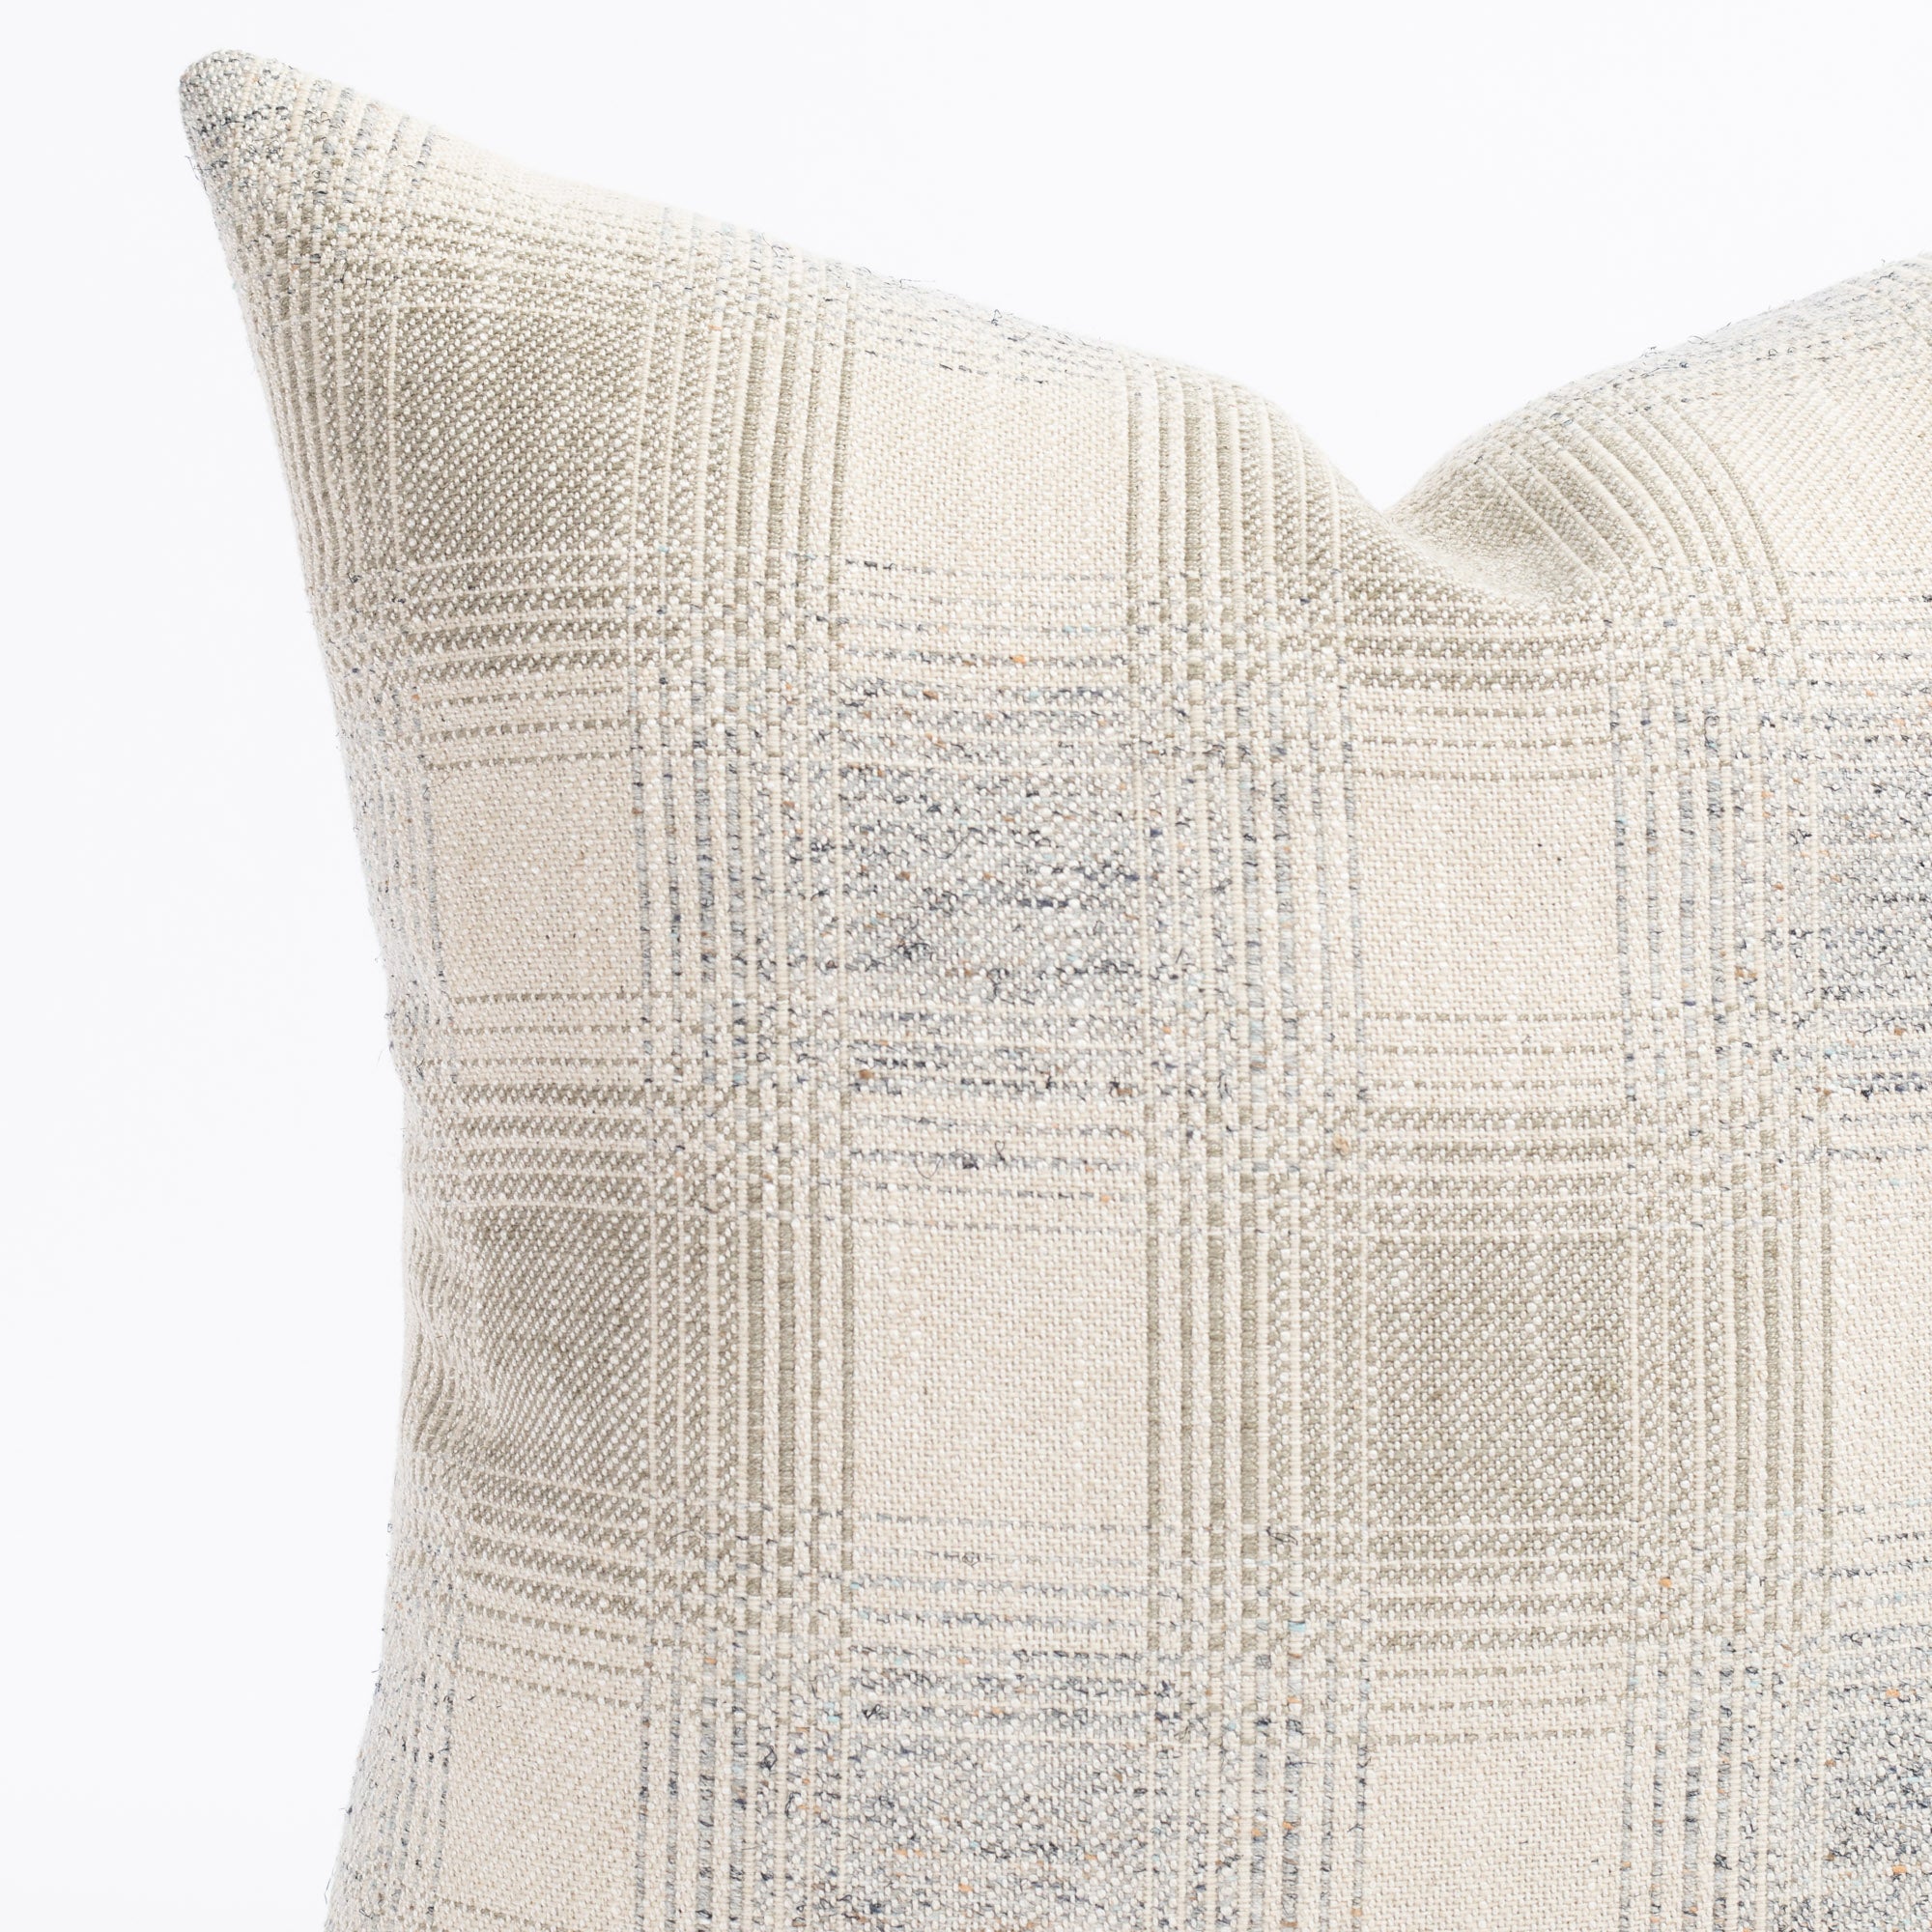 a light gray and denim blue plaid throw pillow : close up view